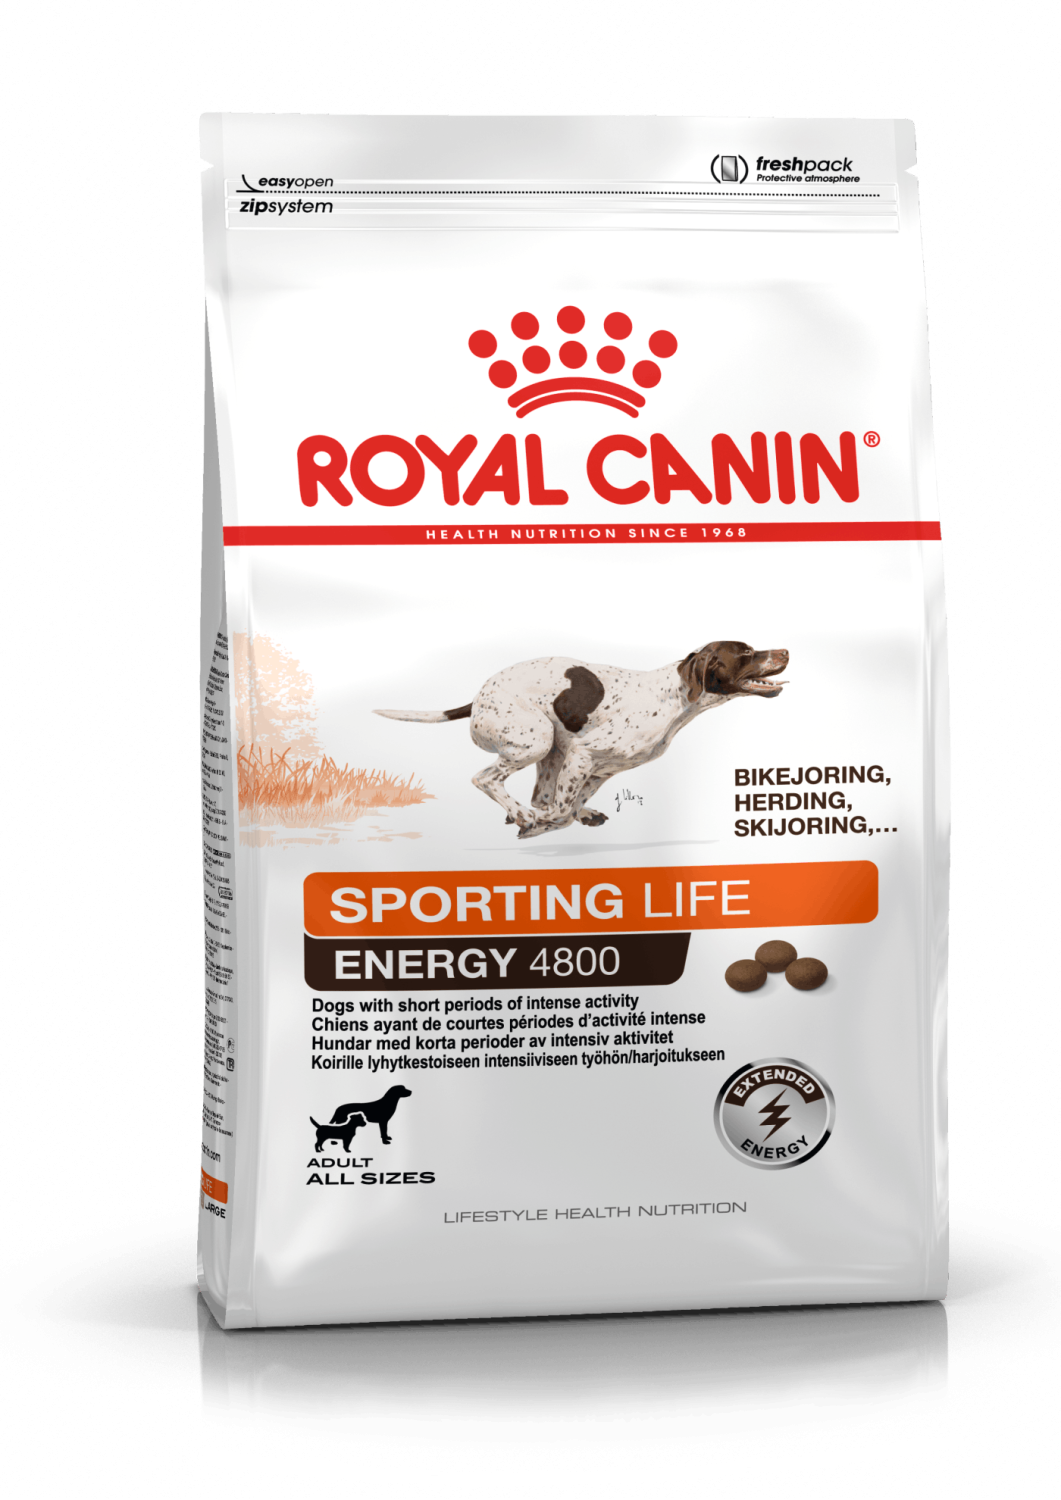 Royal canin 4800 är ett torrfoder som passar för den aktiva hunden